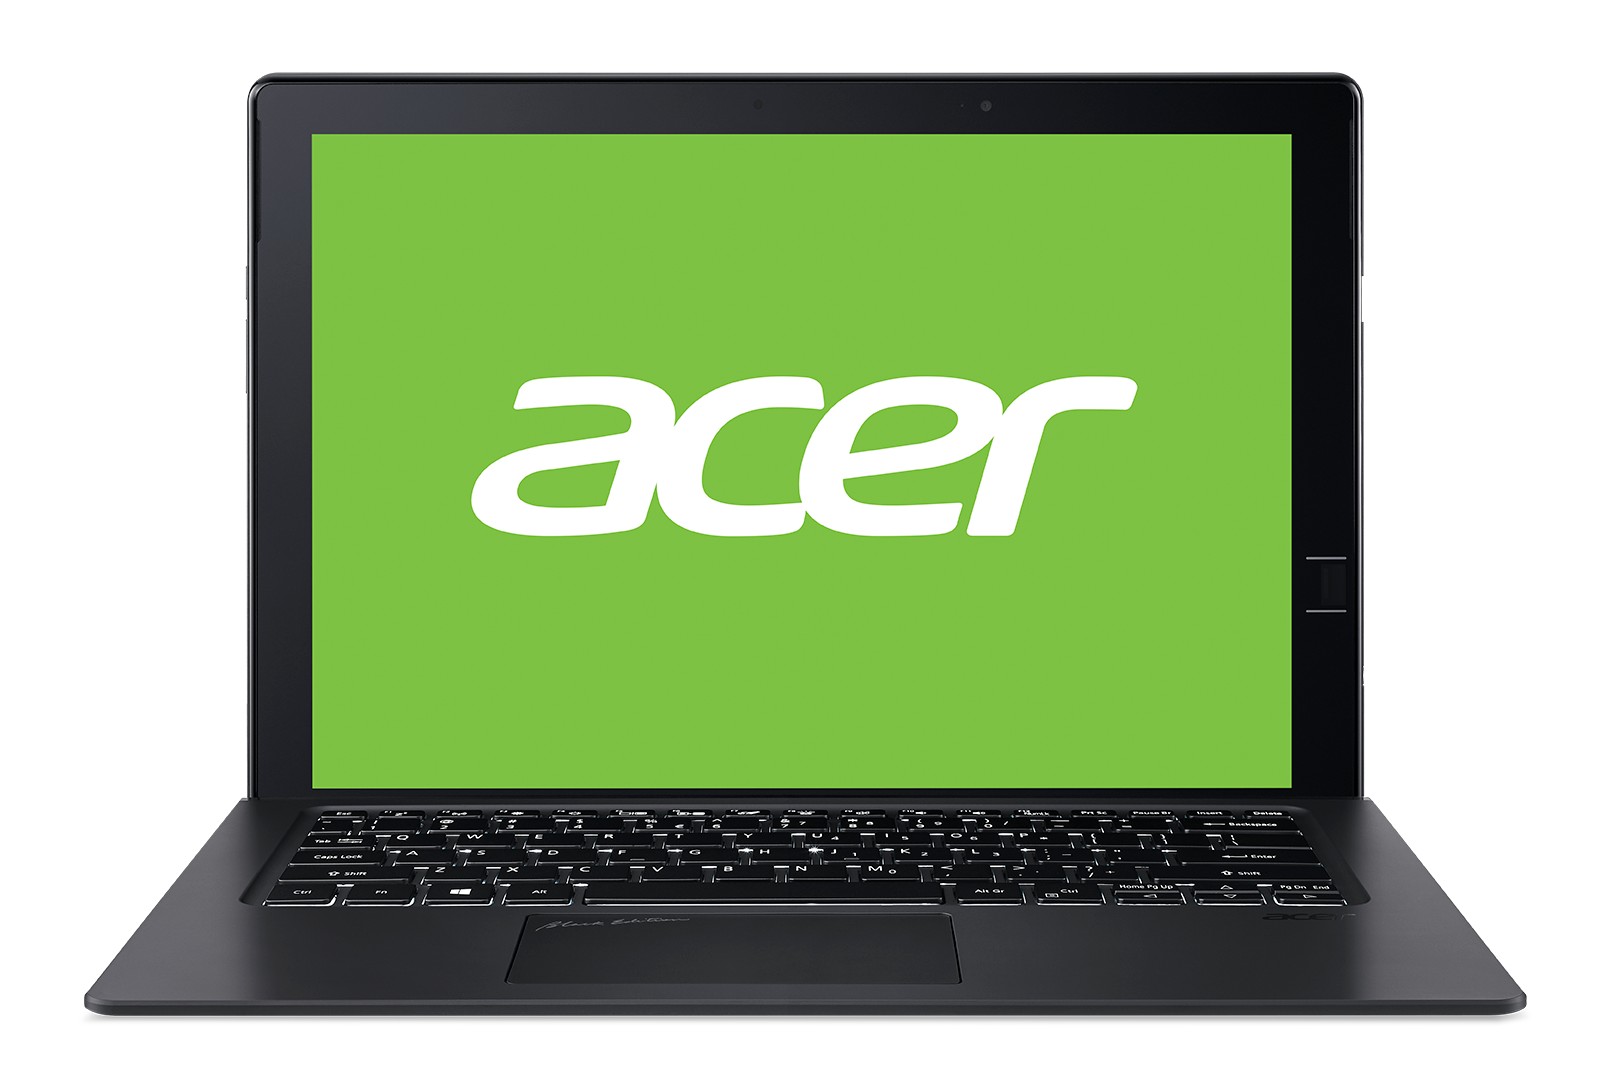 Гибридный ноутбук Acer Switch 7 Black Edition привезли в Россию